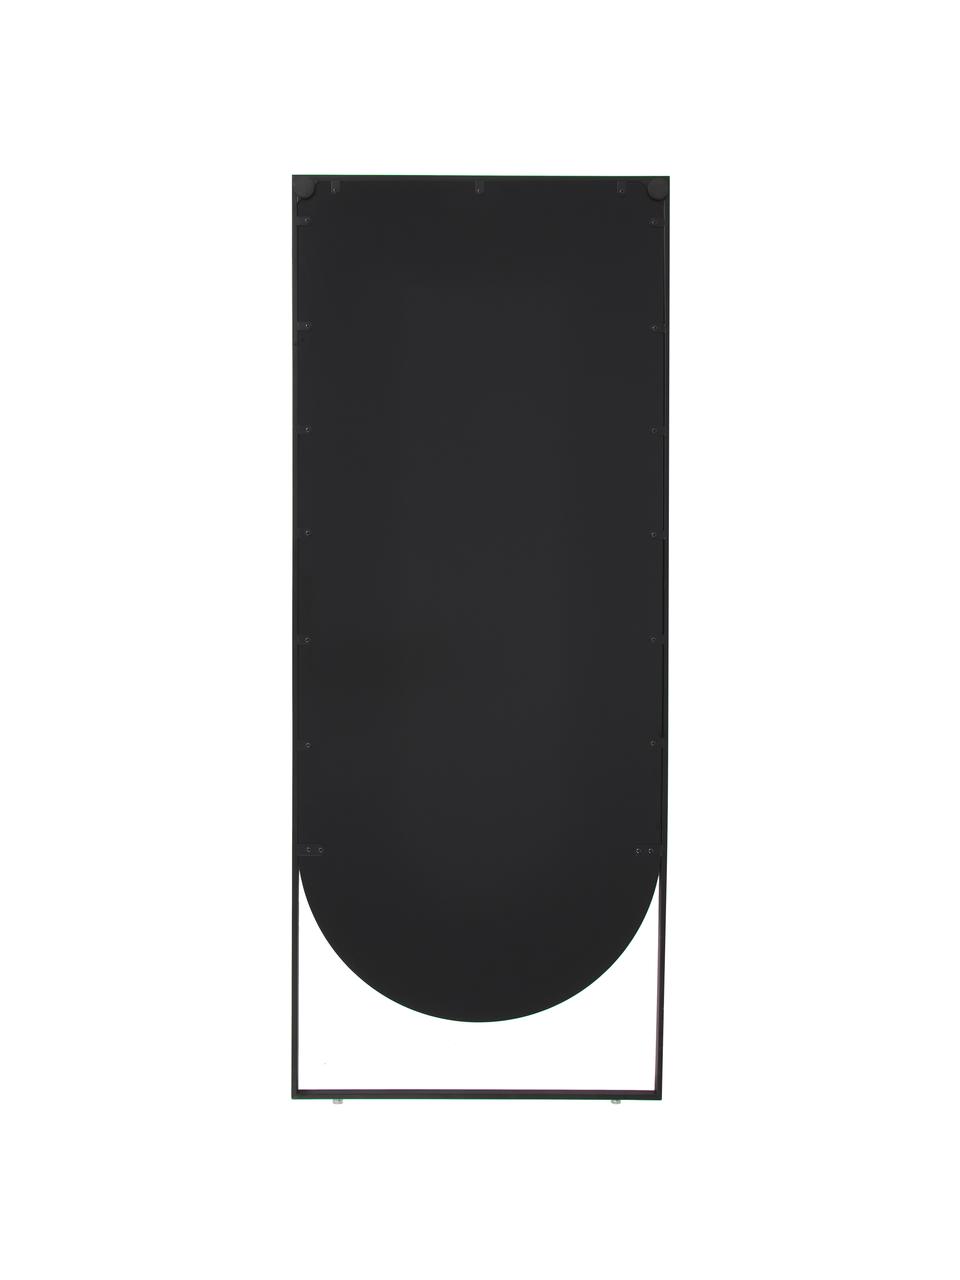 Eckiger Anlehnspiegel Masha, Rahmen: Metall, pulverbeschichtet, Rückseite: Mitteldichte Holzfaserpla, Spiegelfläche: Spiegelglas, Schwarz, B 65 x H 160 cm